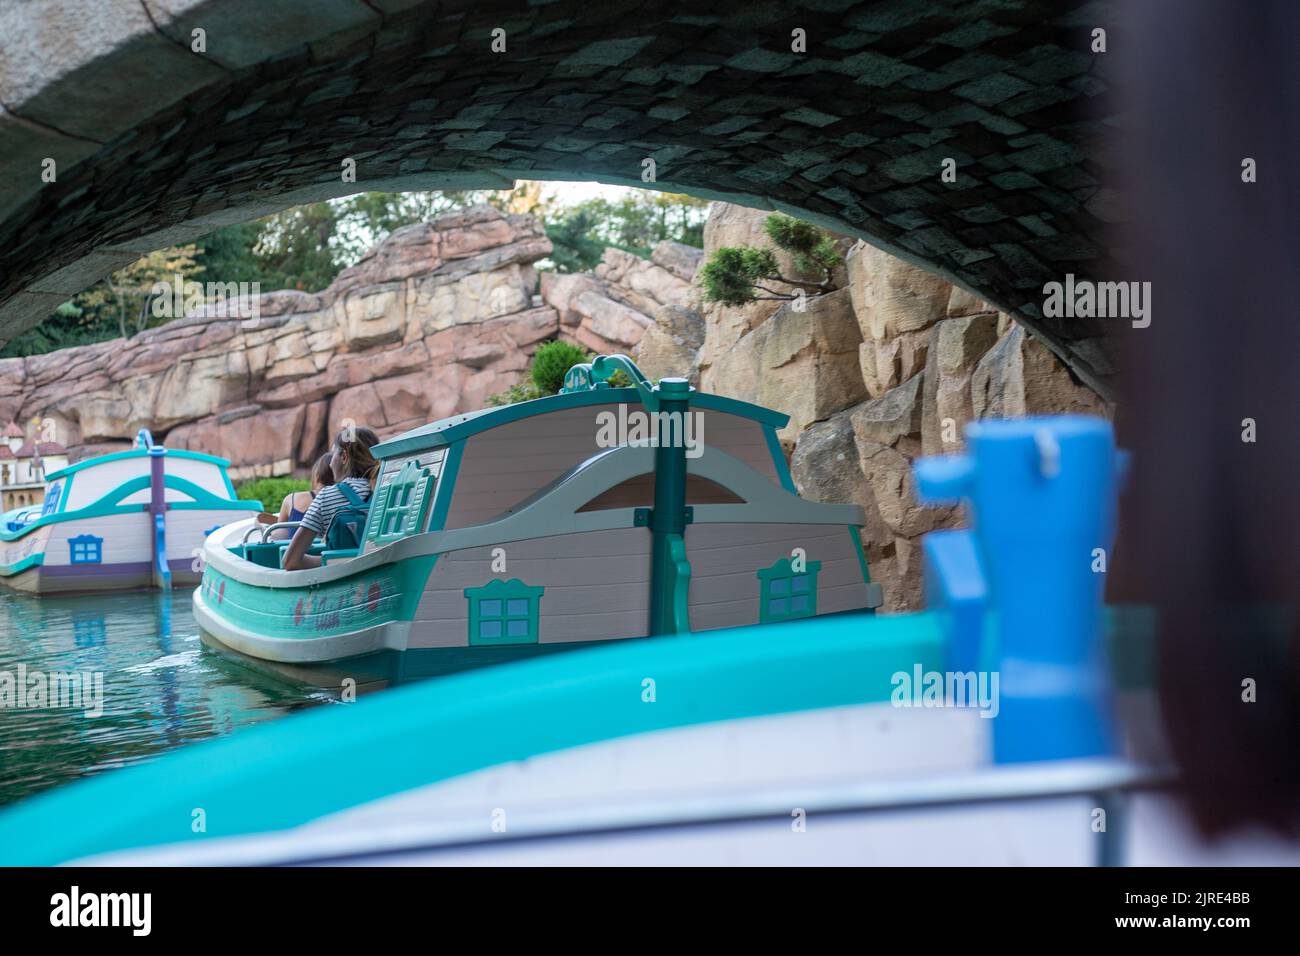 Une petite maison dans le canal de Disneyland Storybook Land Banque D'Images